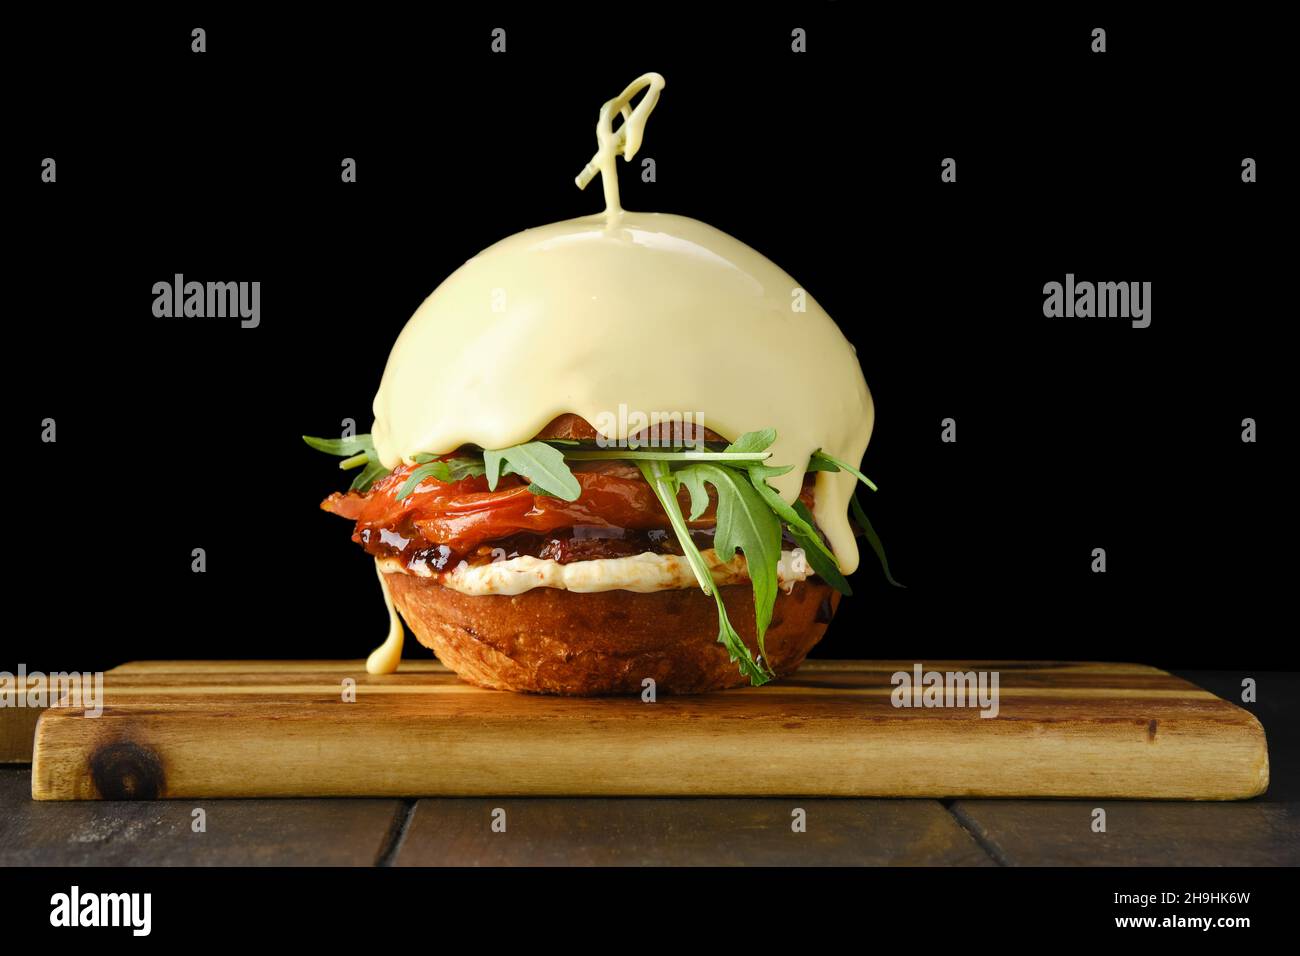 Hamburger avec bœuf et pain sur fond noir recouvert de fromage fondu sur une plaque de service en bois Banque D'Images